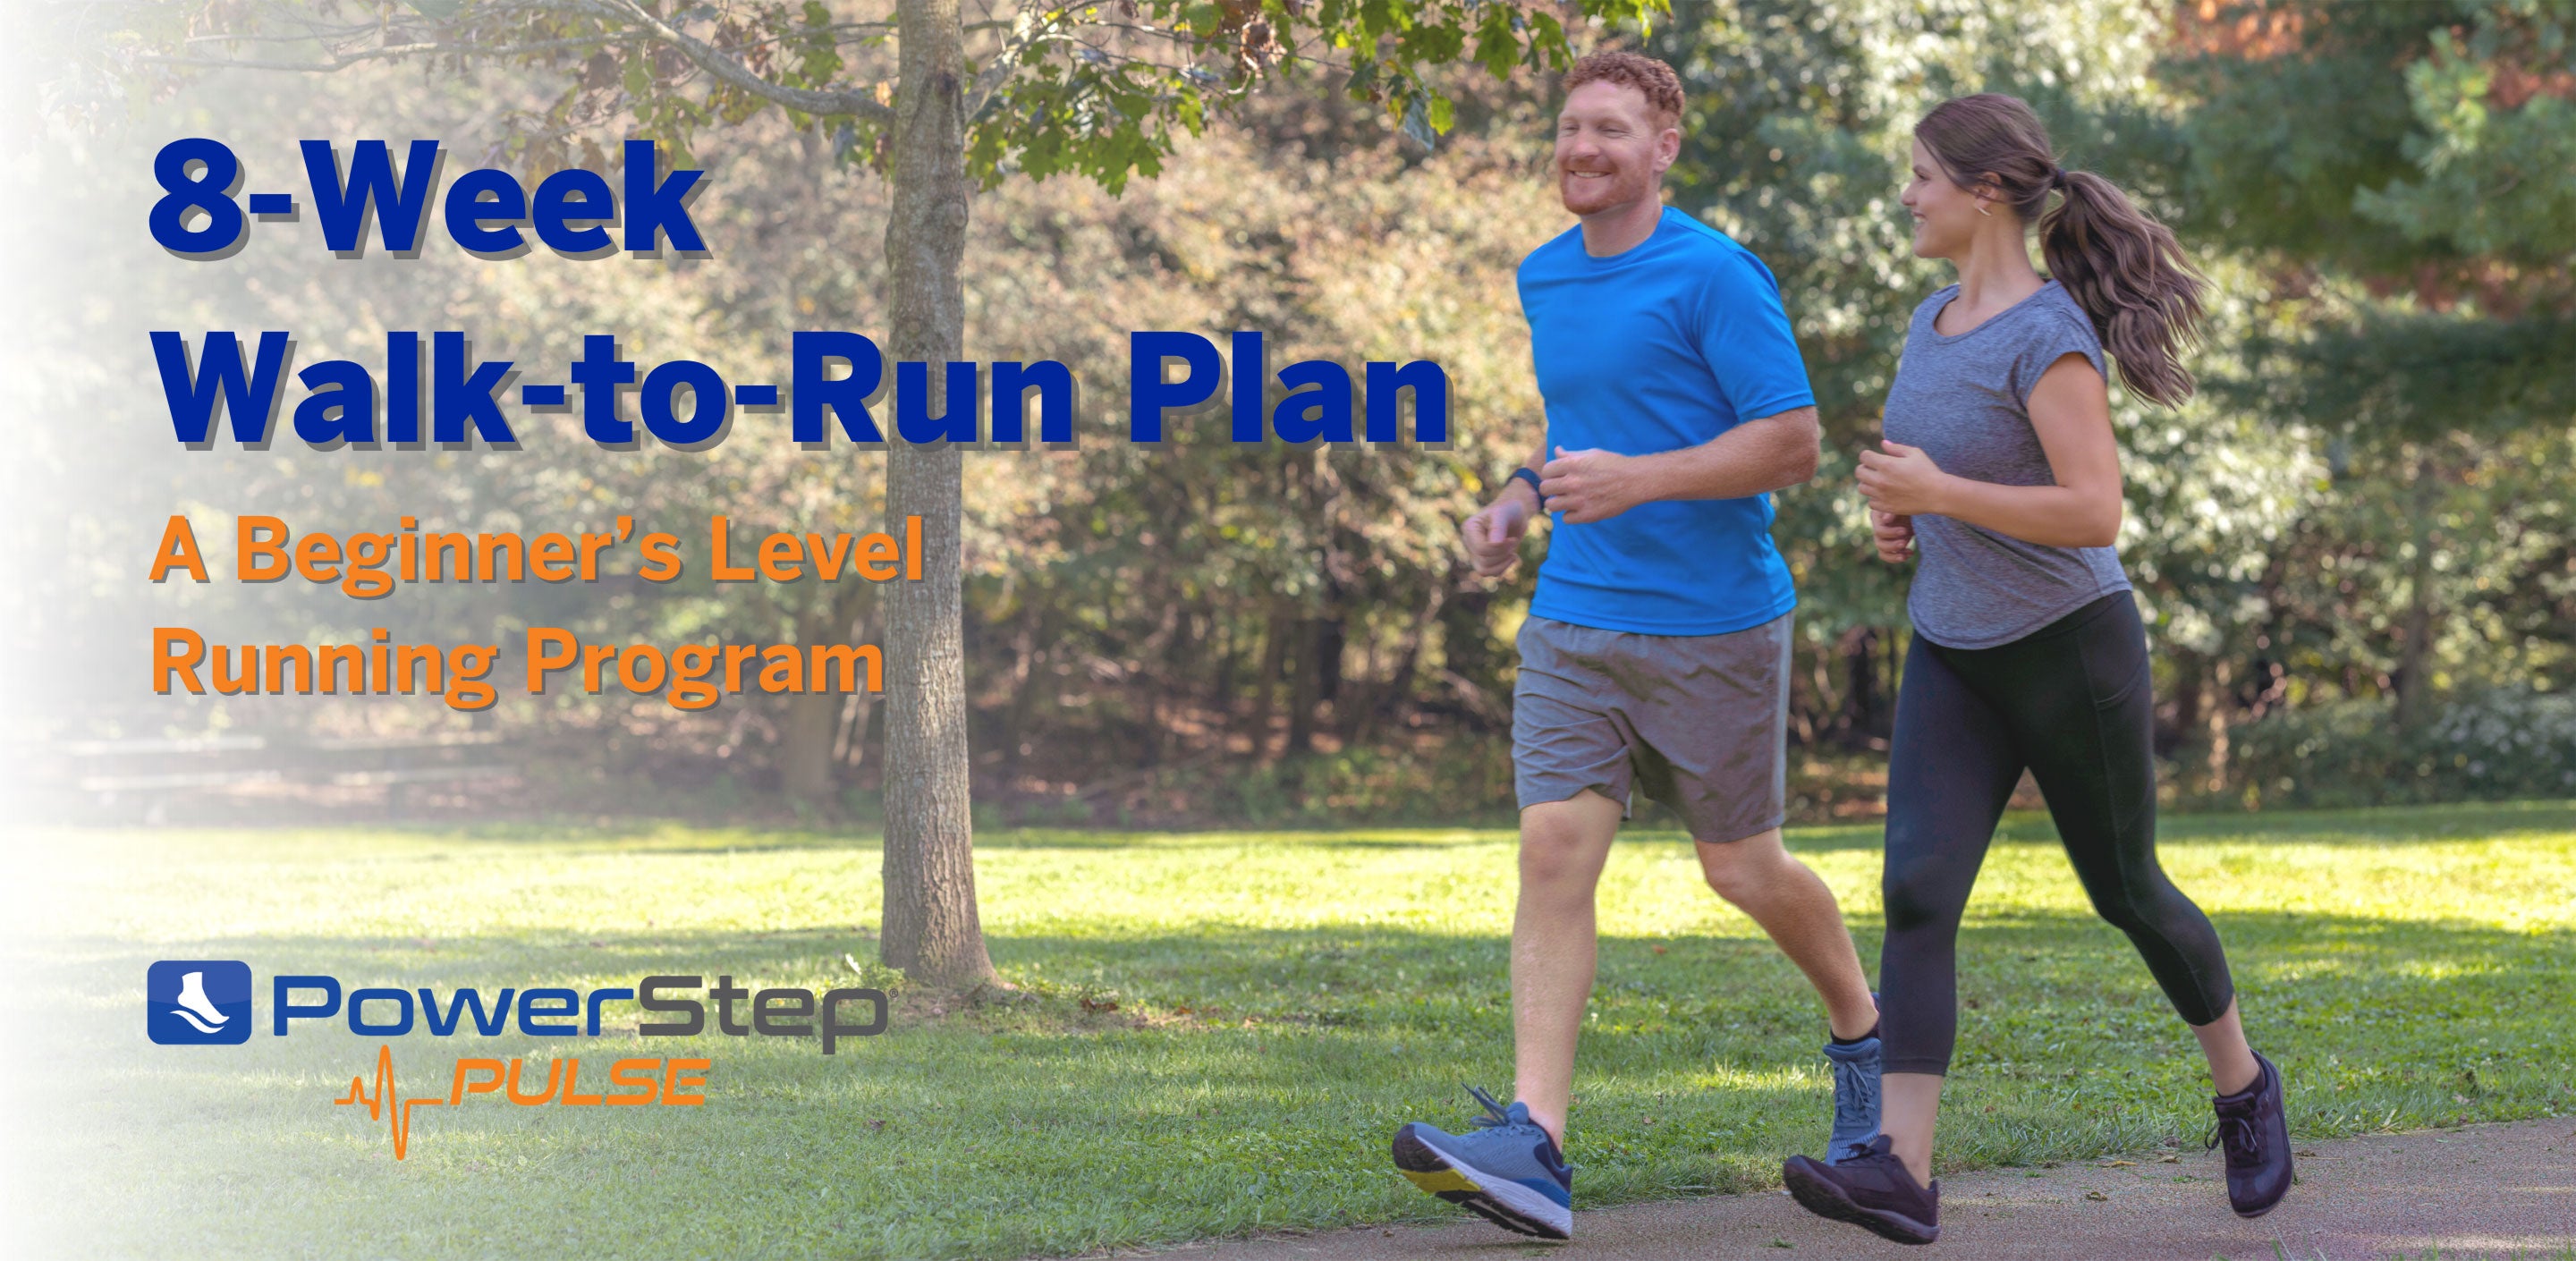 8-Week Walk-to-Run Program for Beginners by PowerStep